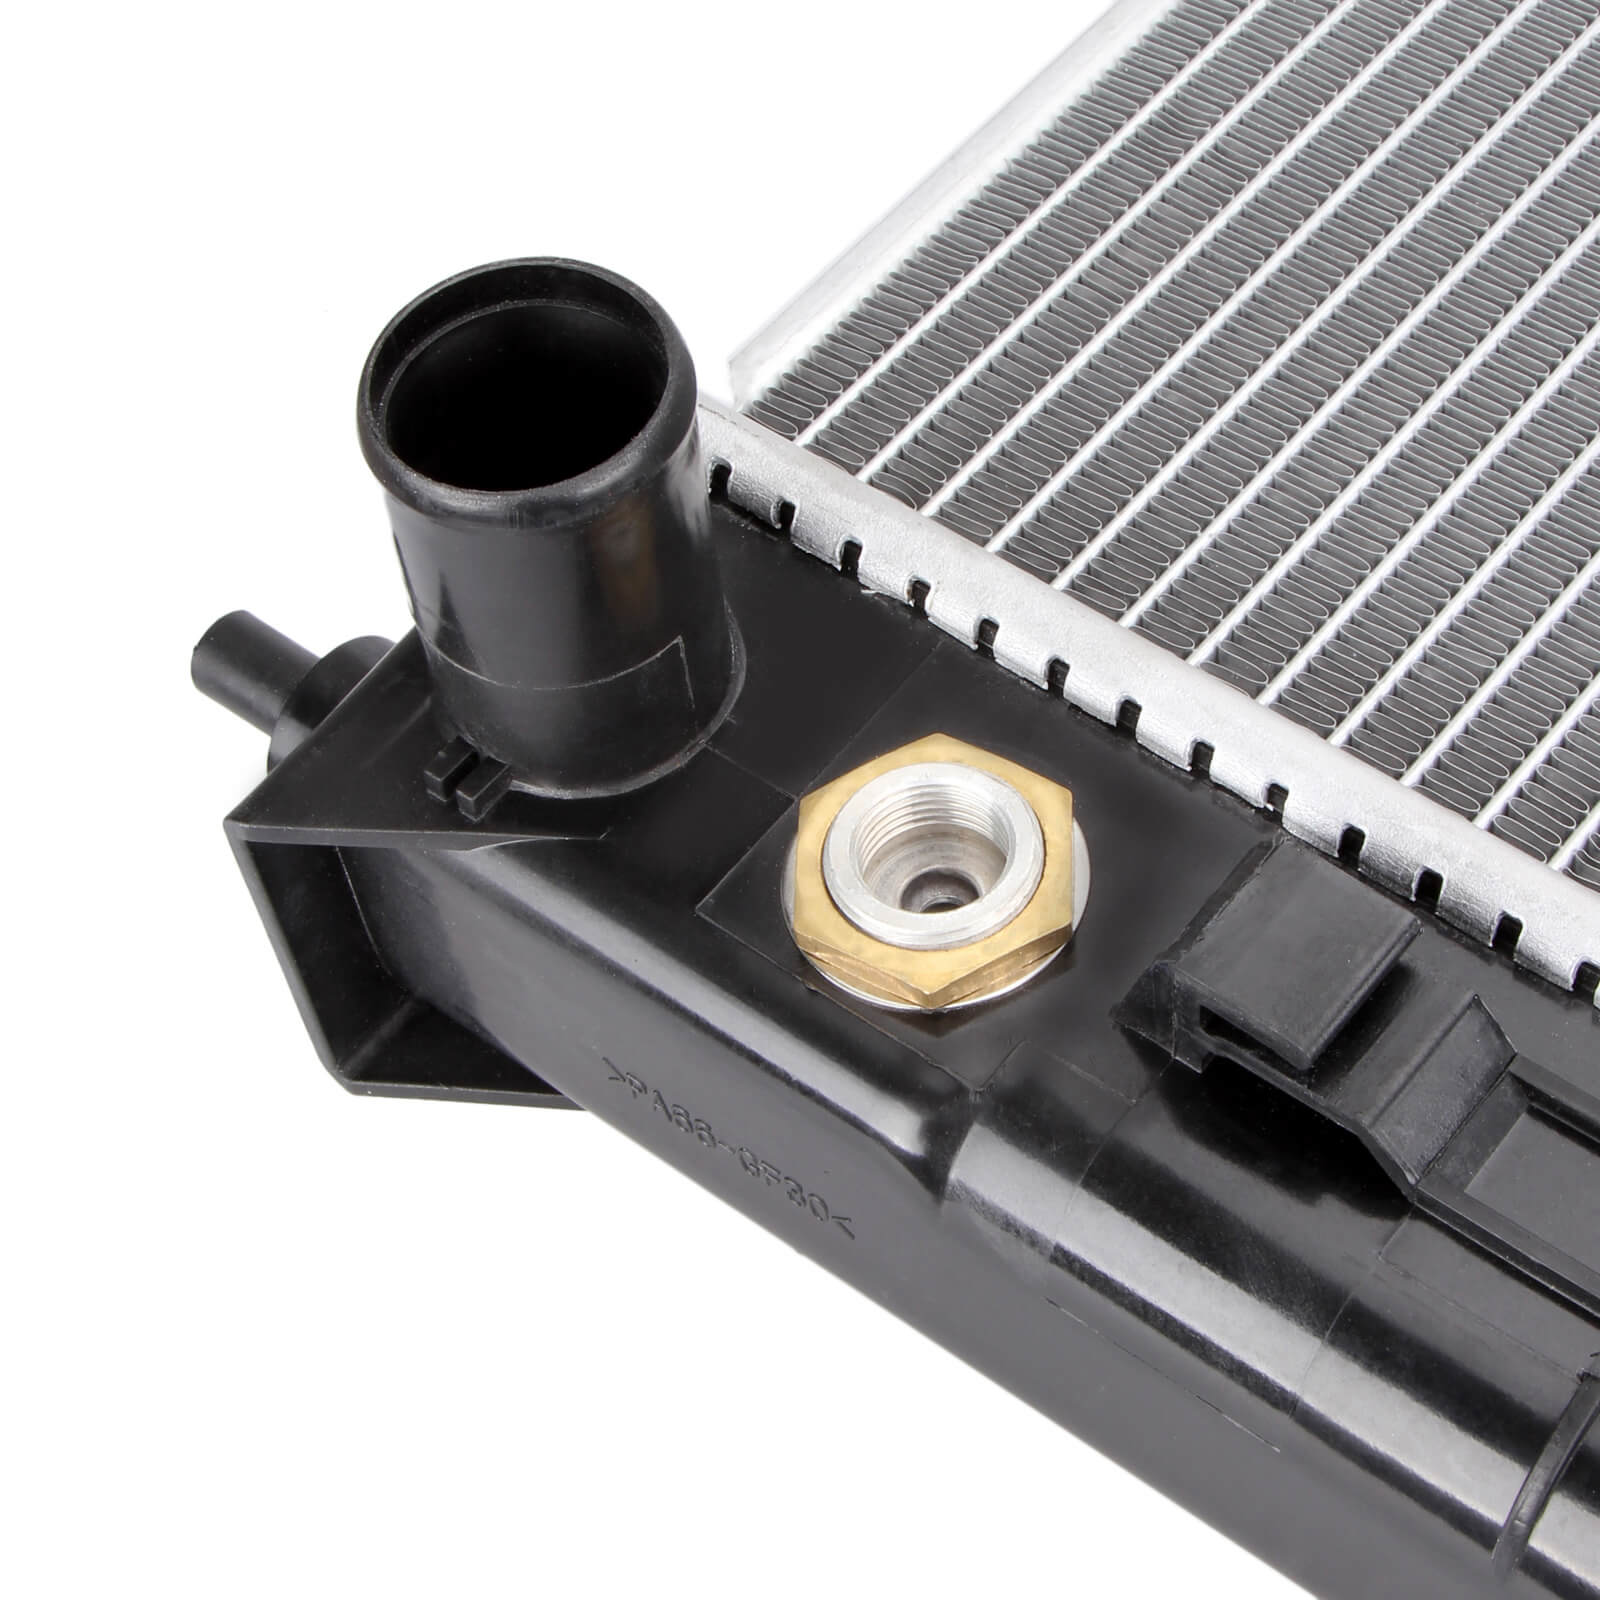 Dromedary-High Quality New 2688 Full Aluminum Radiator For Lexus Rx 330 33-202-v6-4